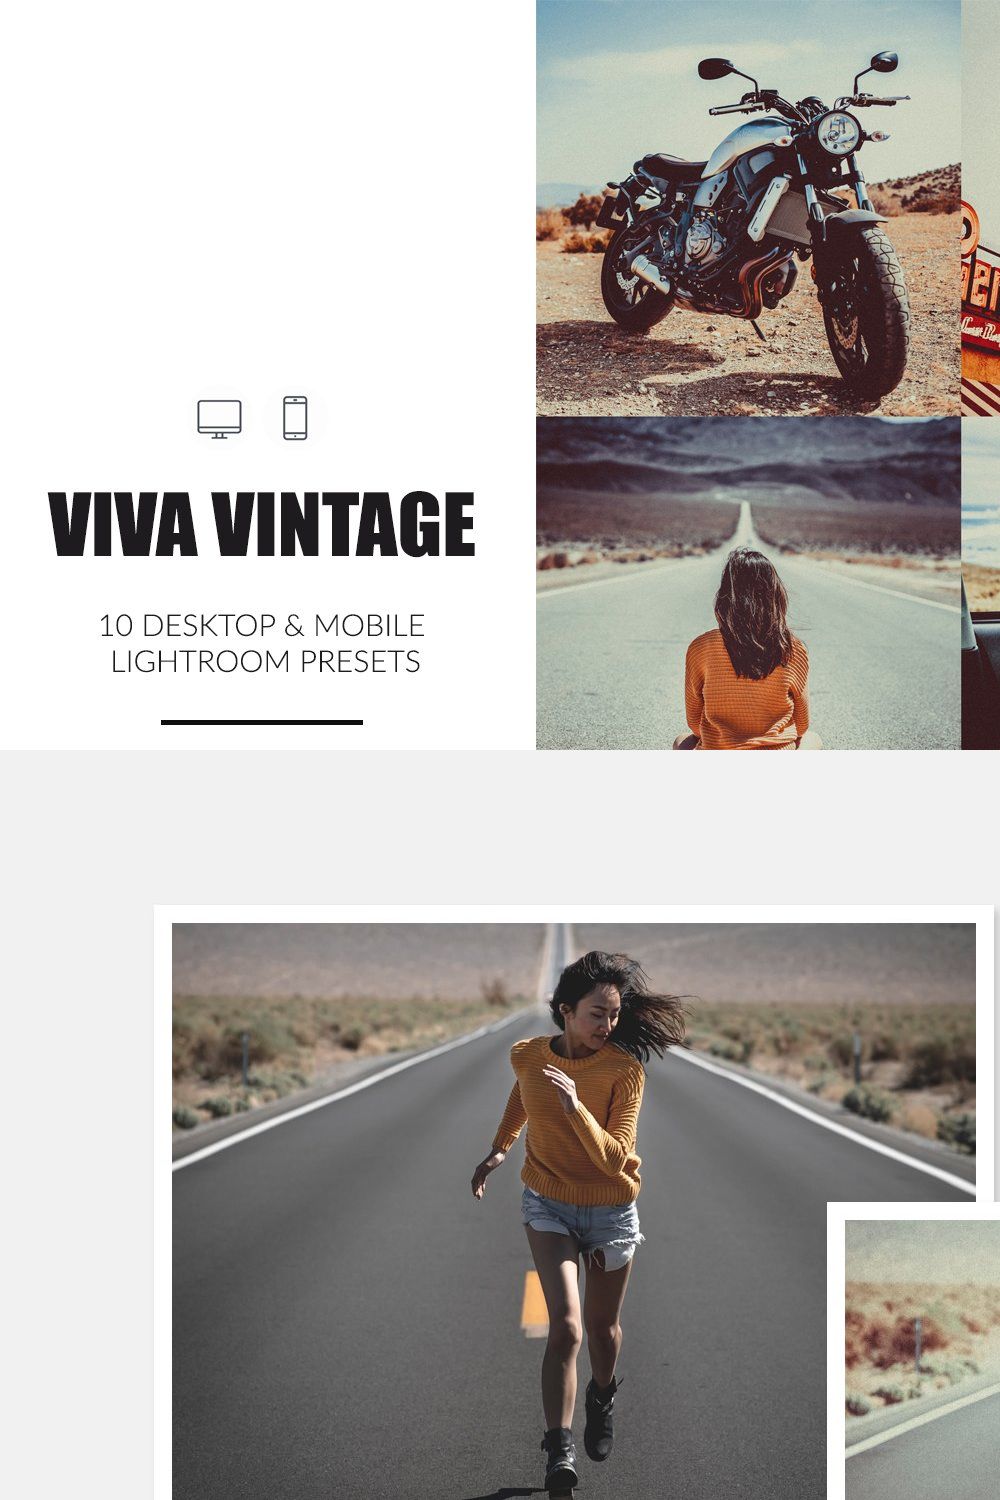 Viva Vintage Lightroom Presets pinterest preview image.